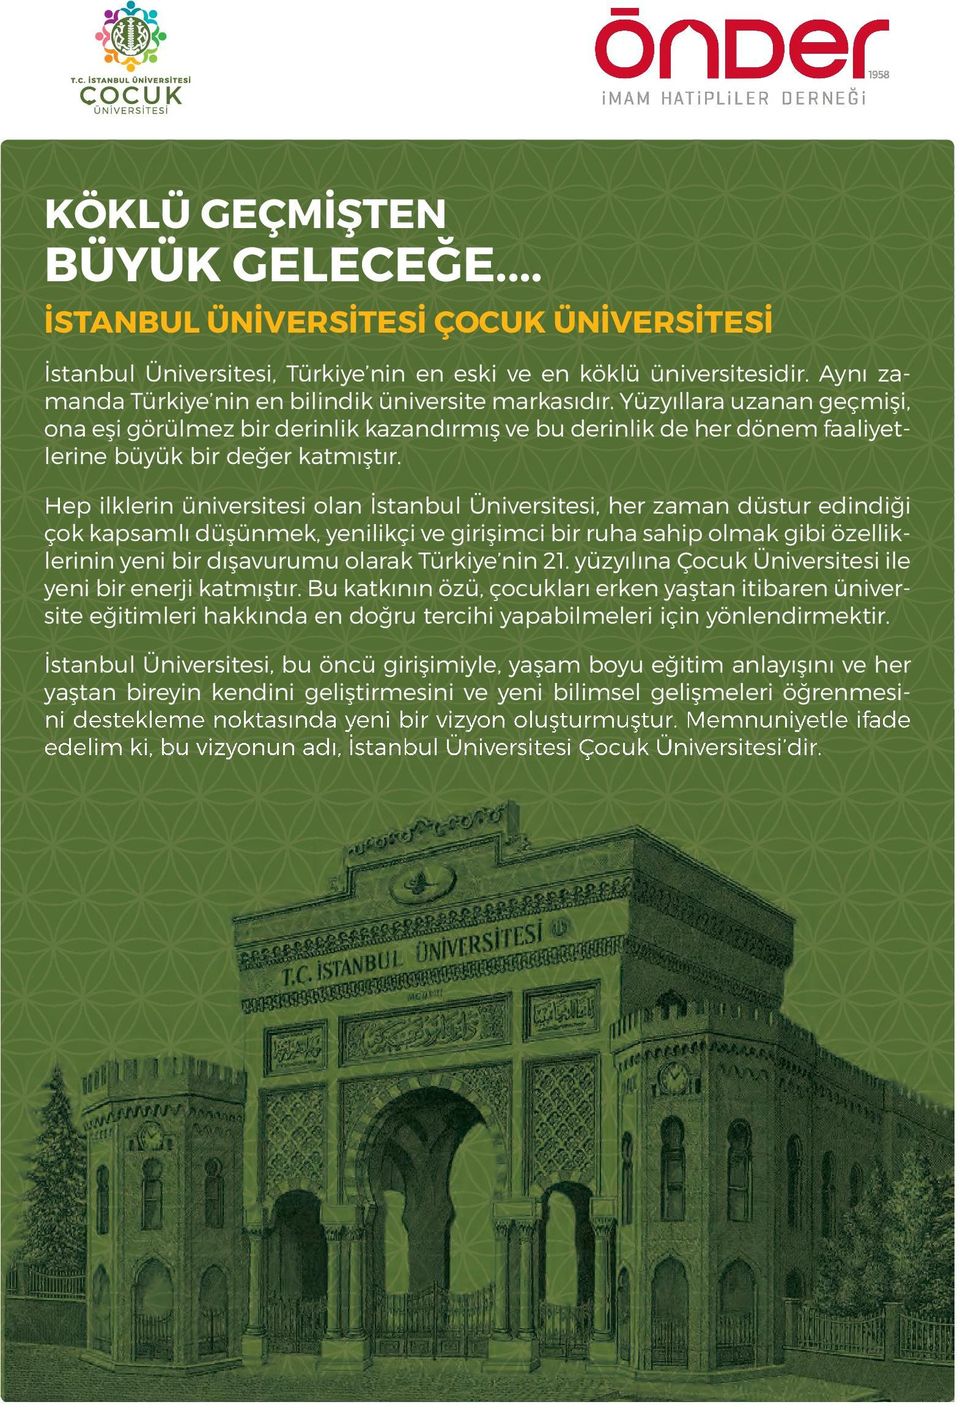 Hep ilklerin üniversitesi olan İstanbul Üniversitesi, her zaman düstur edindiği çok kapsamlı düşünmek, yenilikçi ve girişimci bir ruha sahip olmak gibi özelliklerinin yeni bir dışavurumu olarak